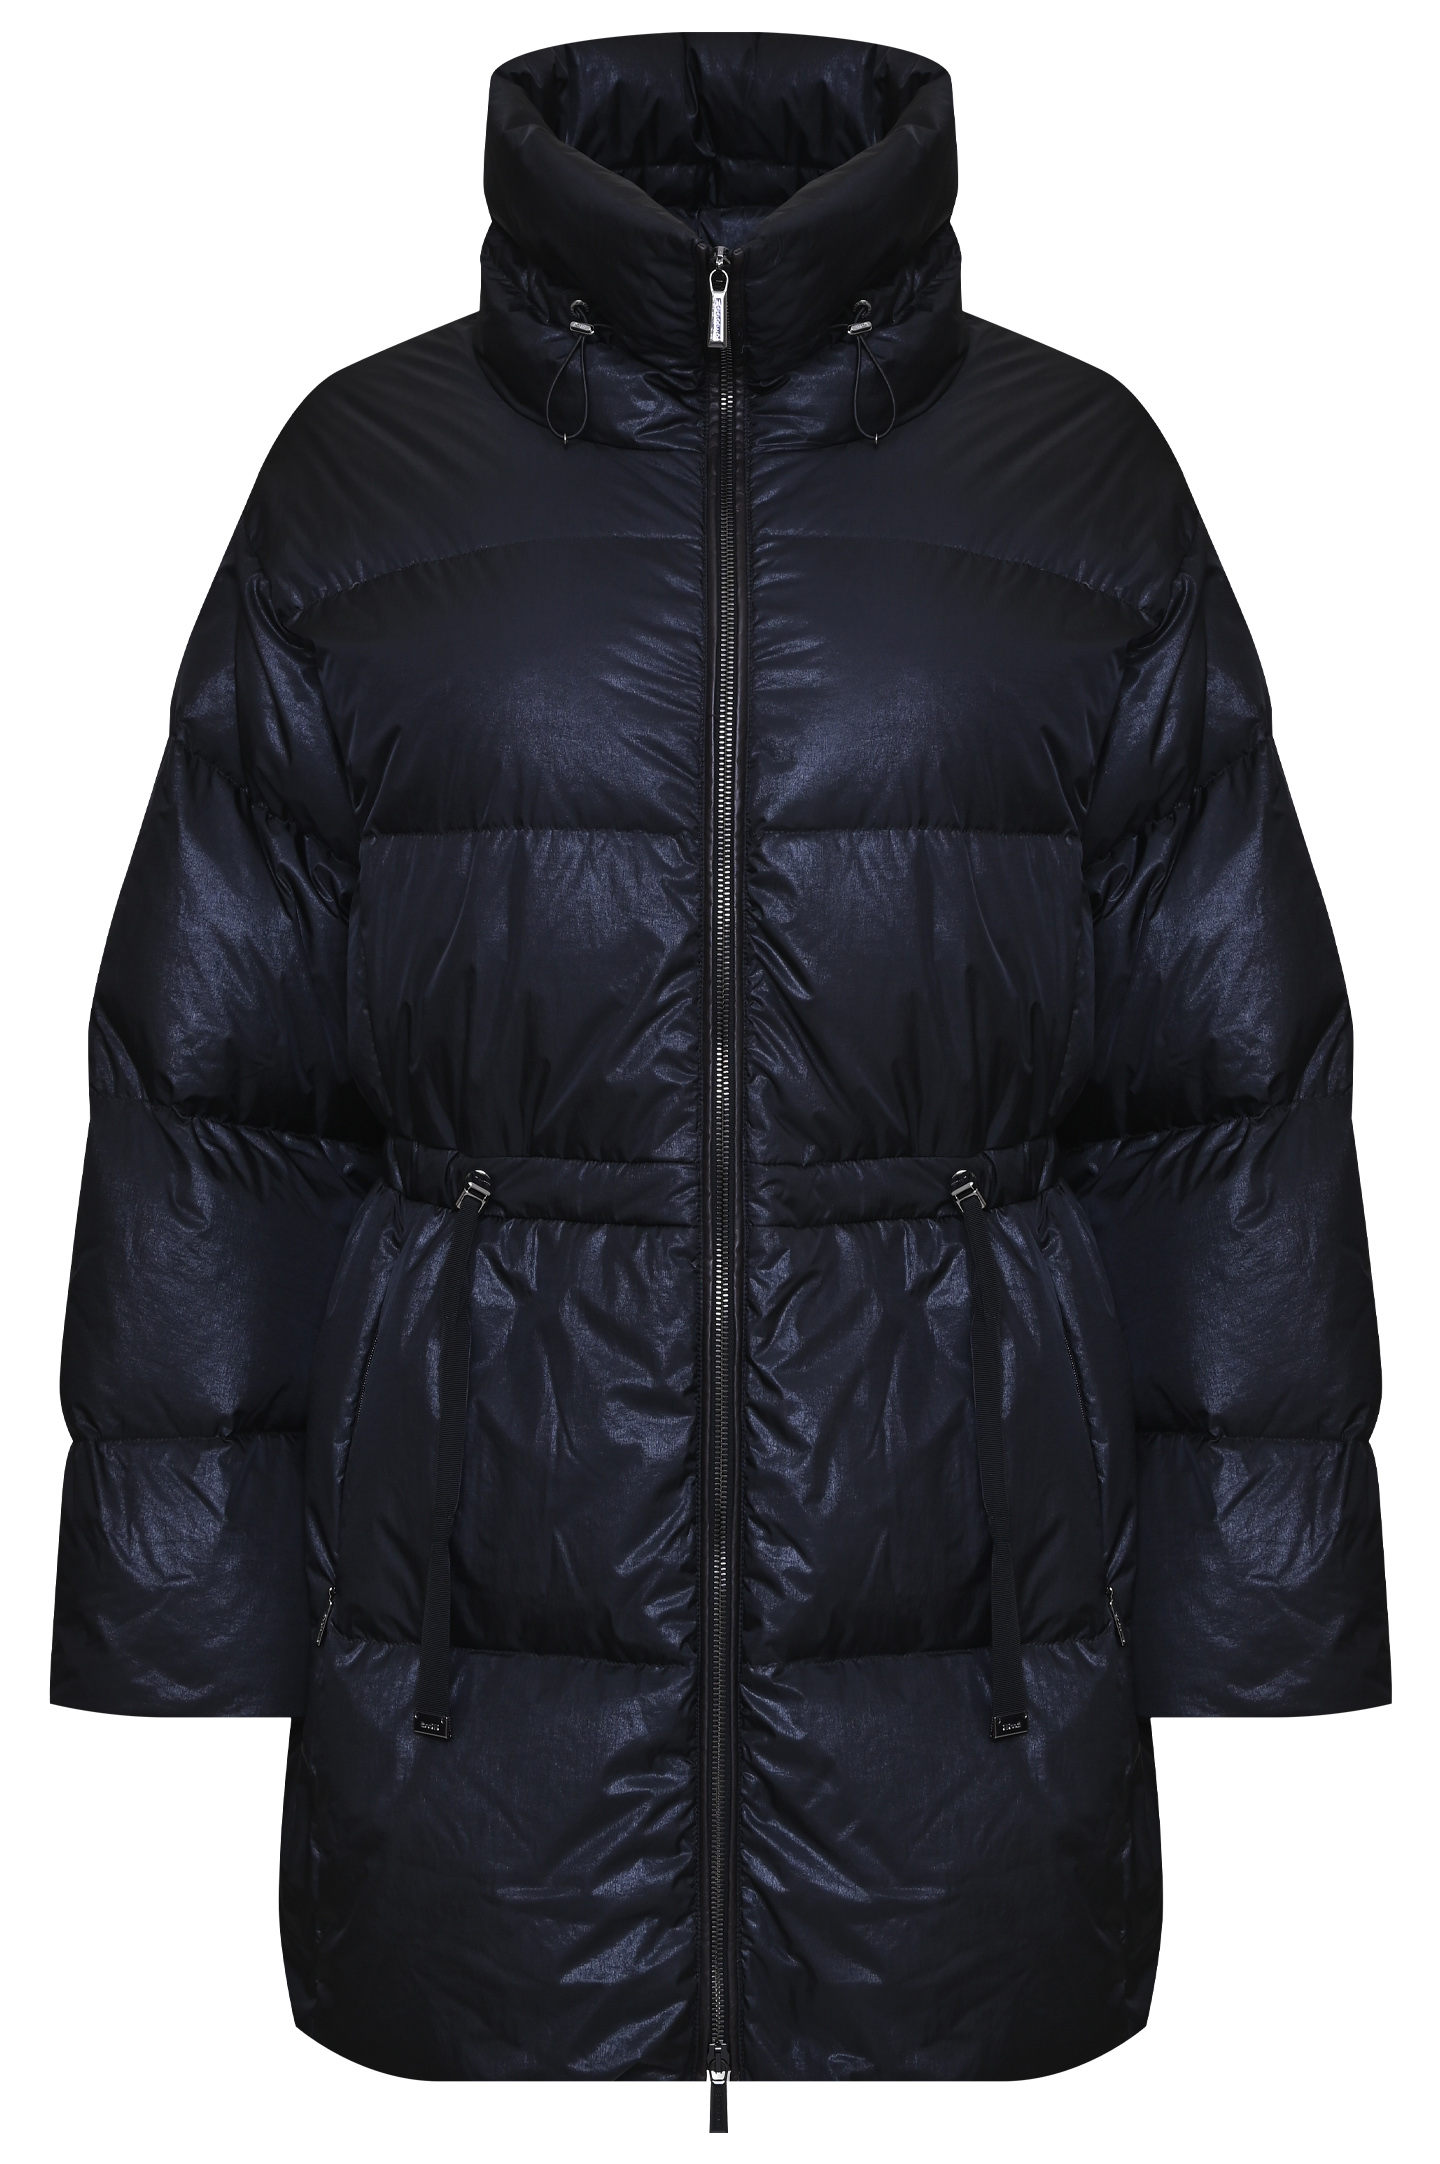 Куртка MOORER CELLINA-TCN, цвет: Черный, Женский